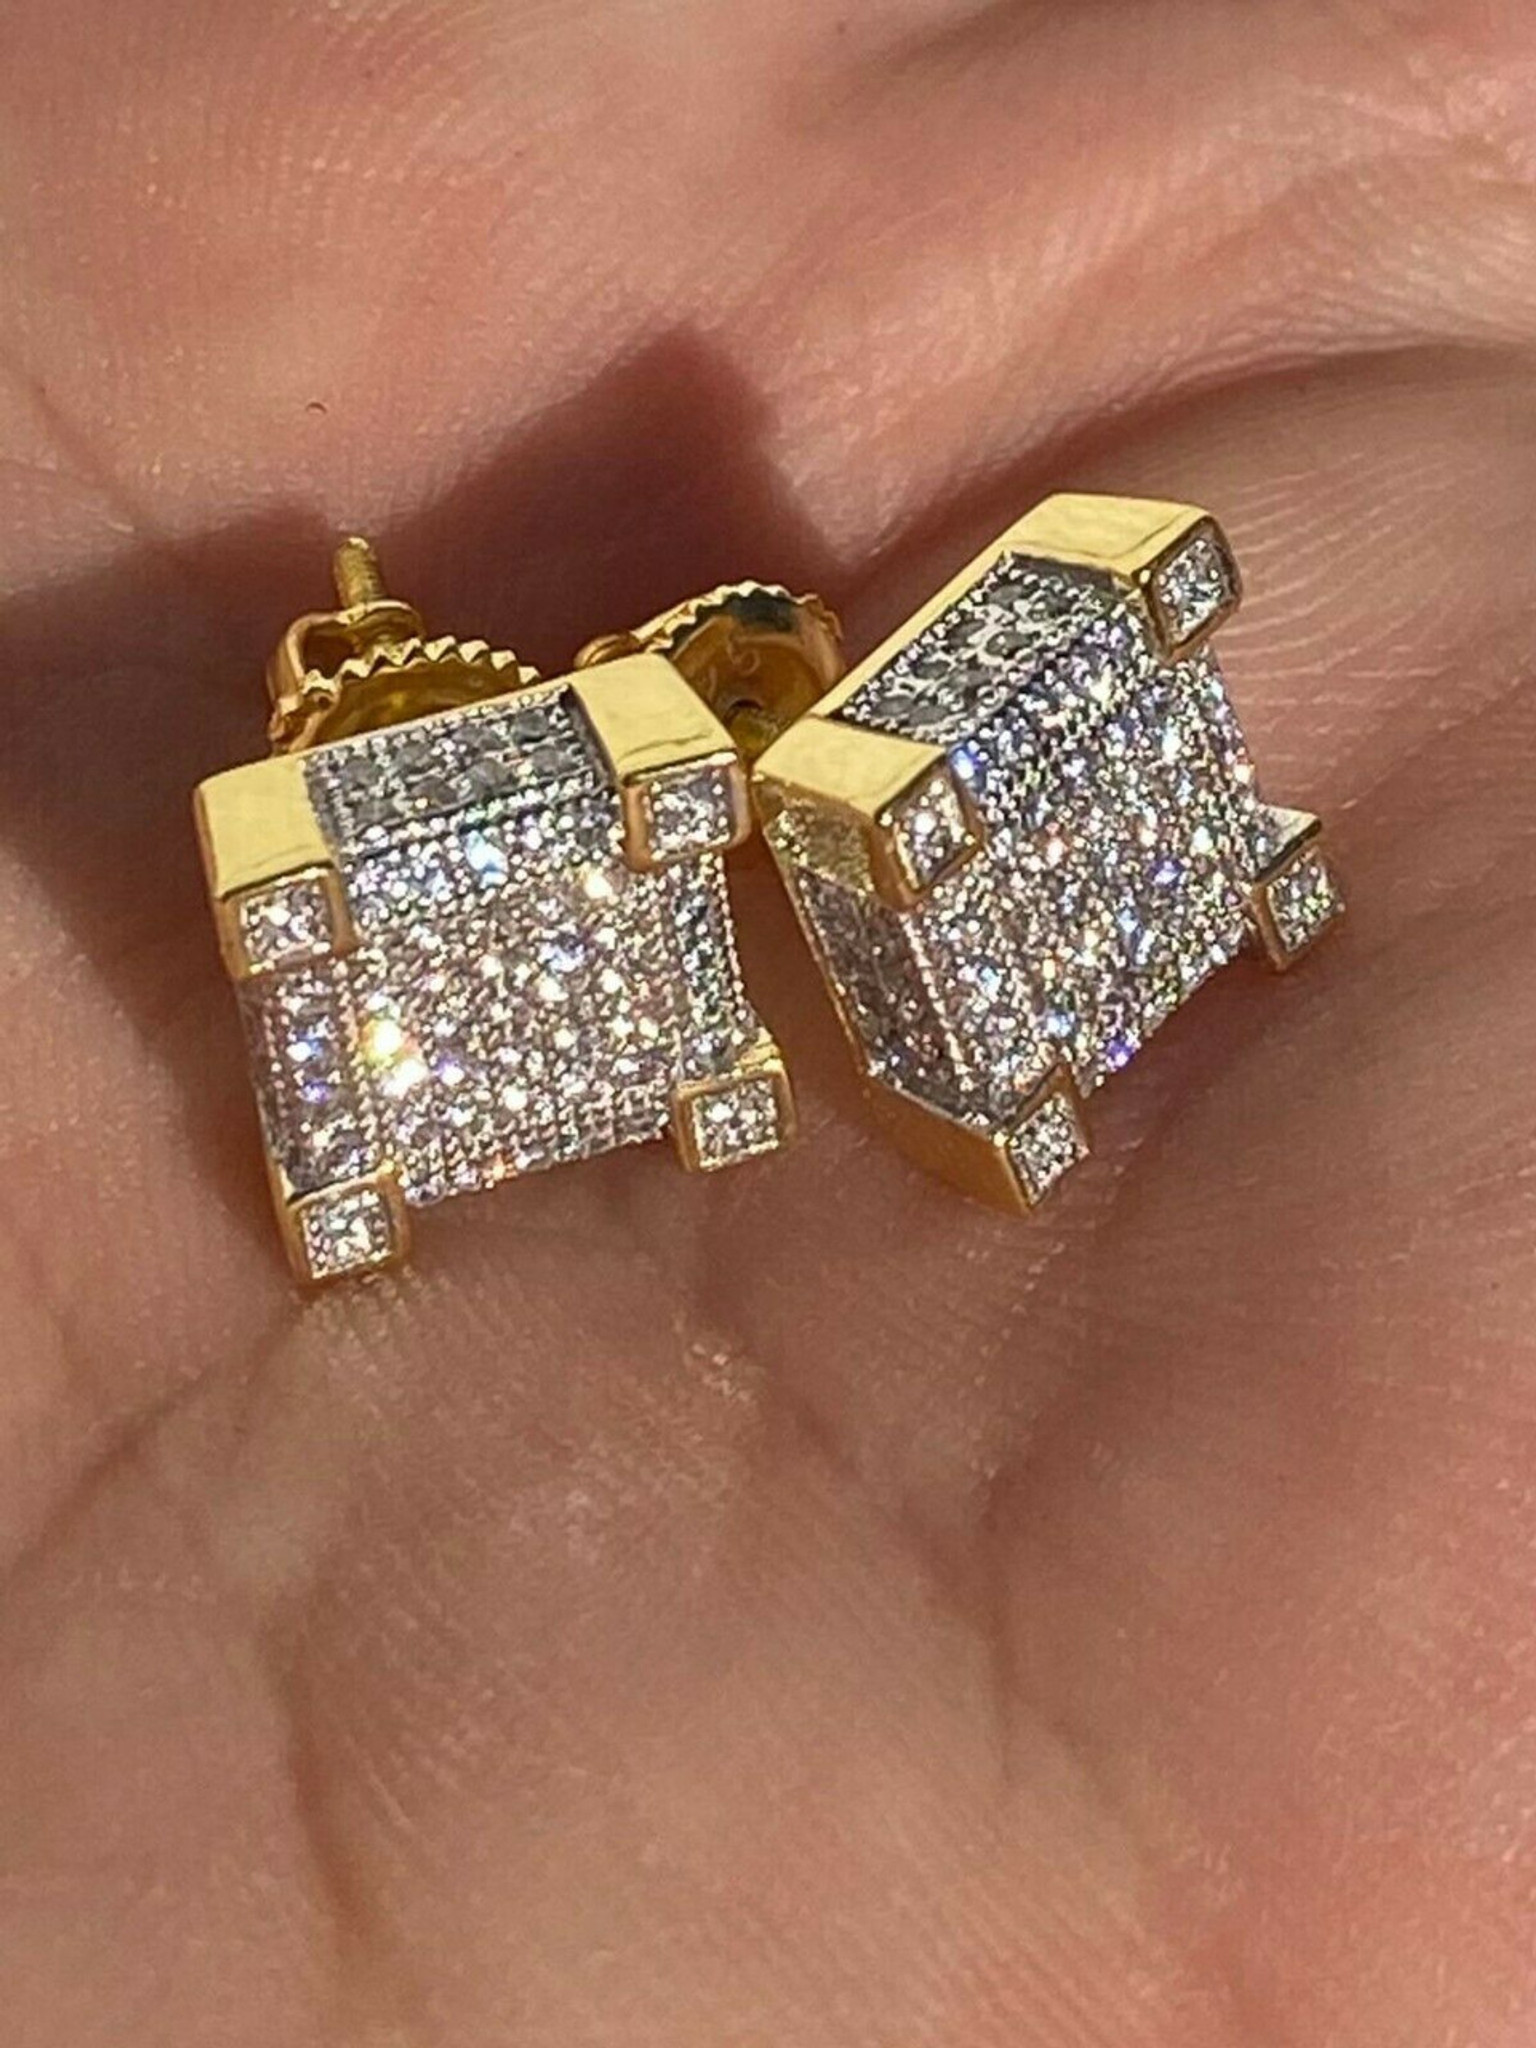 Real Diamond Stud Earrings for Men, Mens Diamond Studs, Black Stud Earrings  for Guys, Mens Black Stud Earrings, Black Post Earrings, E500SB - Etsy